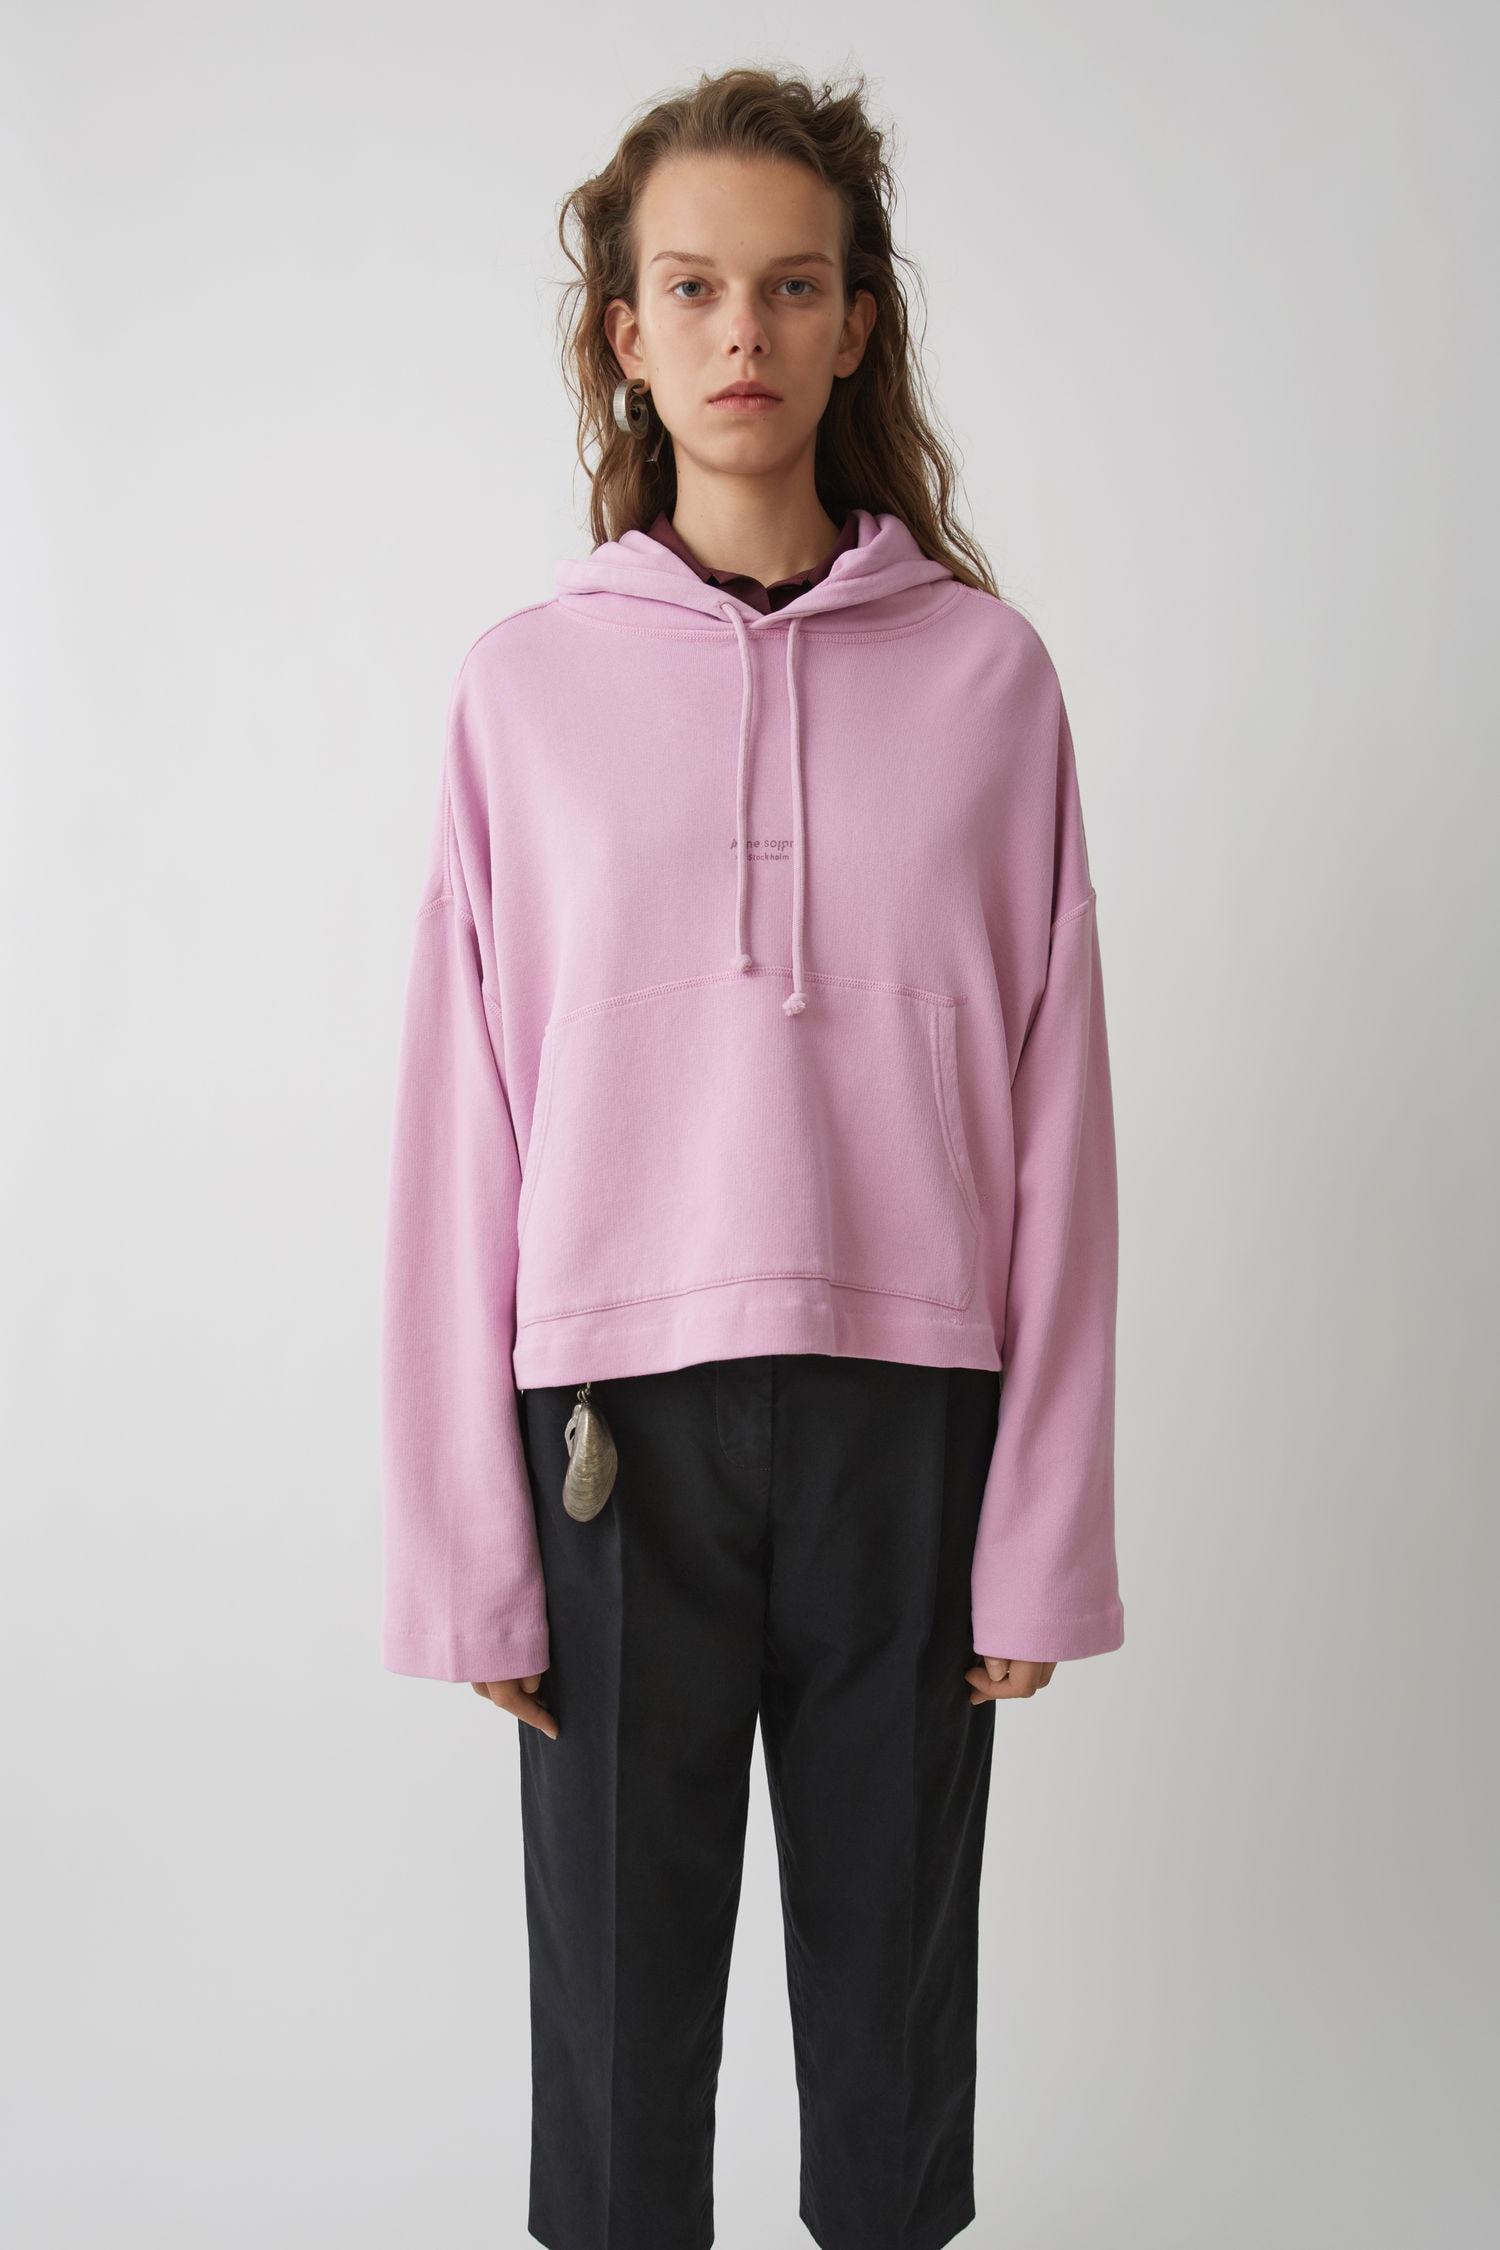 acne studios oversized joghy hoodie womens sweatshirt hooded candy pastel pink black